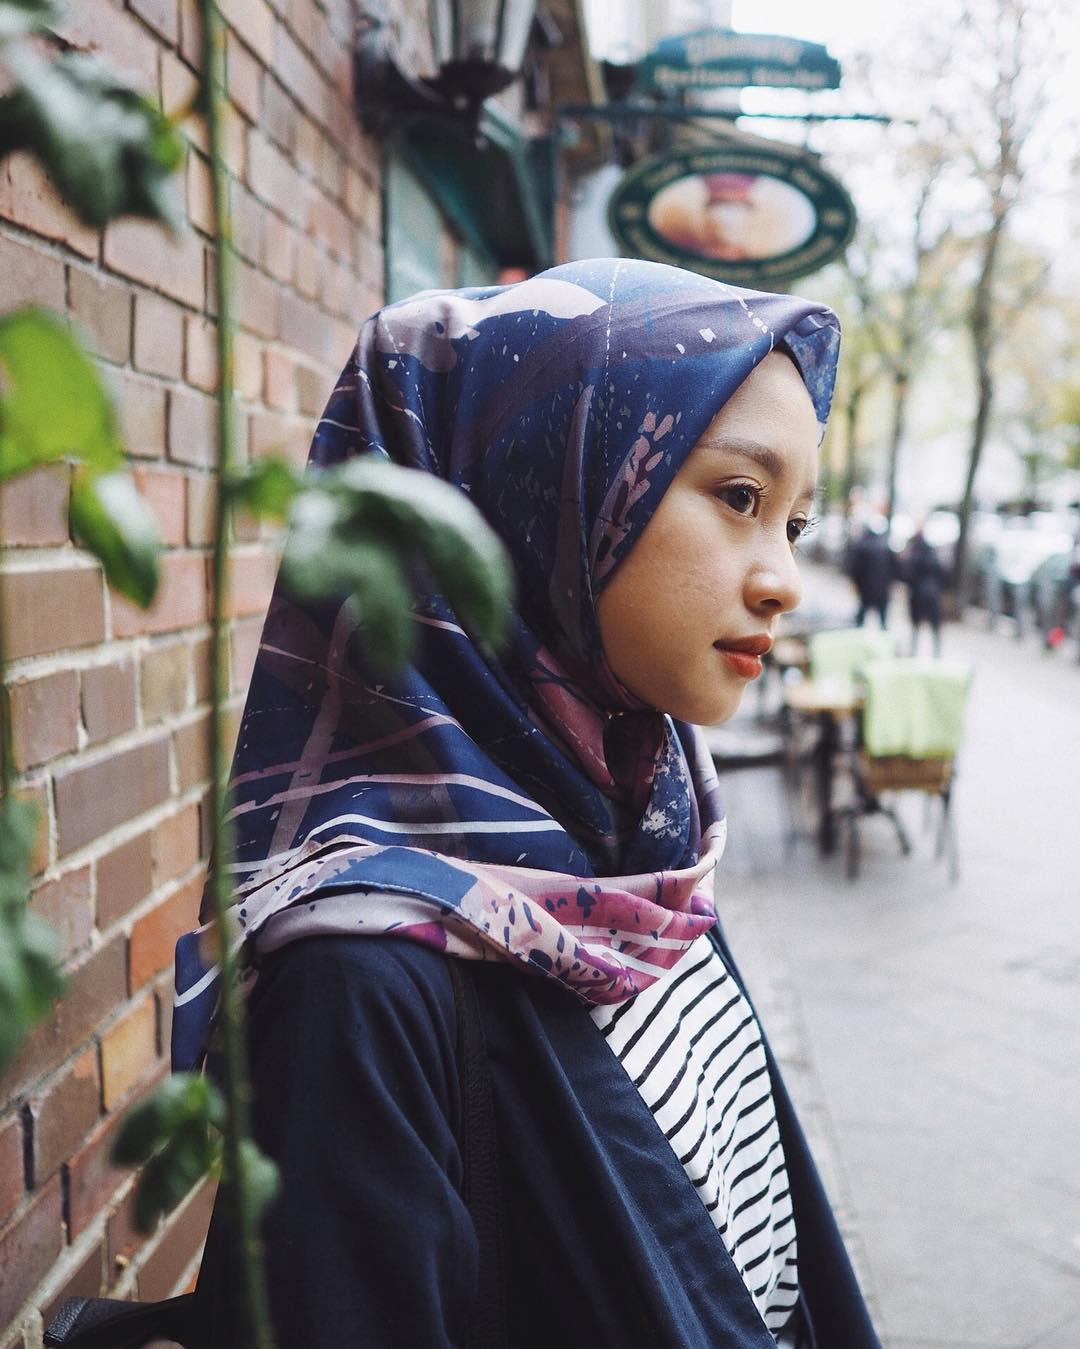  214 Gambar Wanita Muslimah Berhijab Syar i Kartun Plazzzza